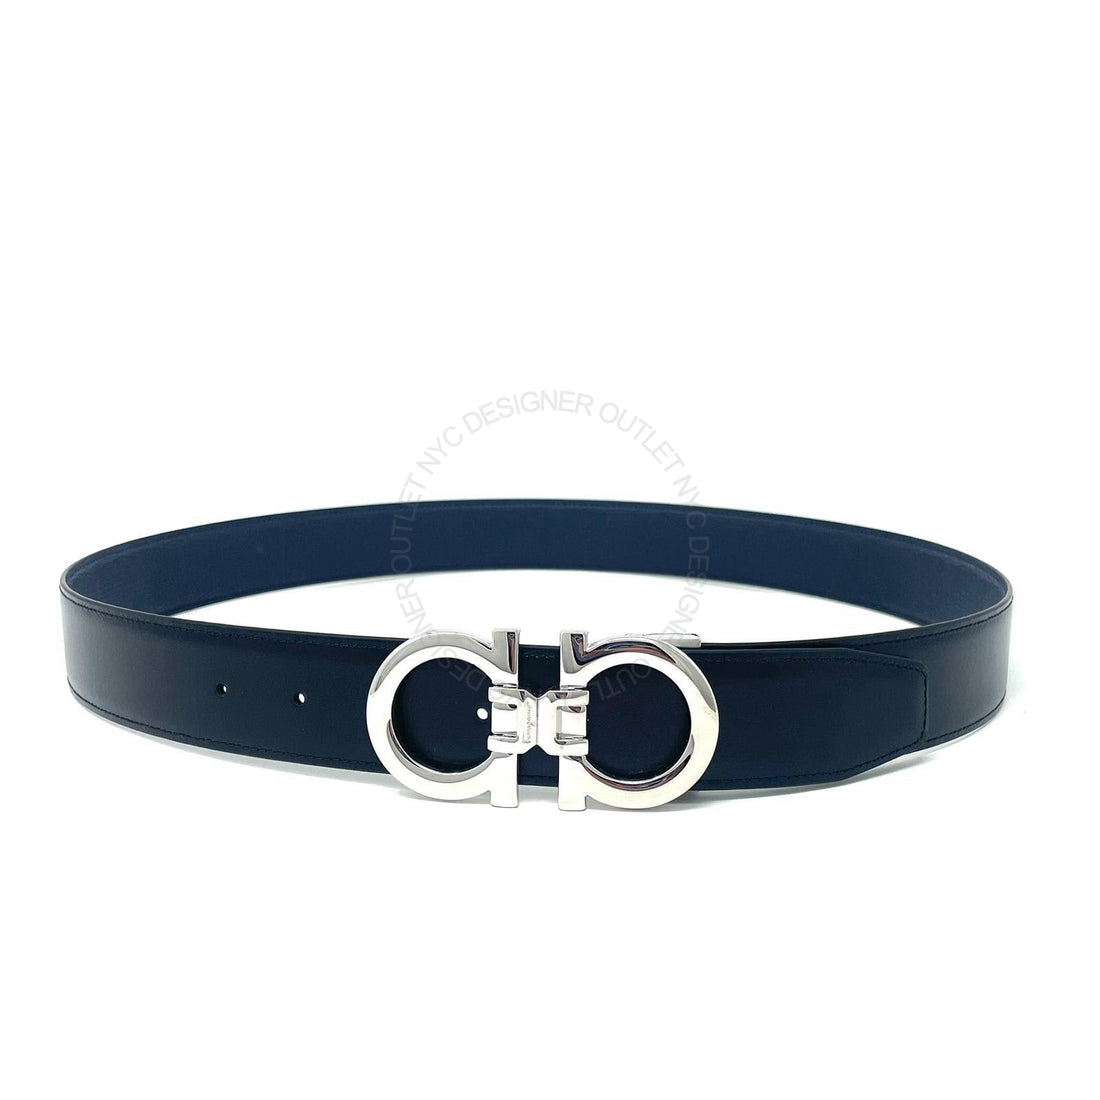 Ferragamo Black/Black Leather Adjustable belt